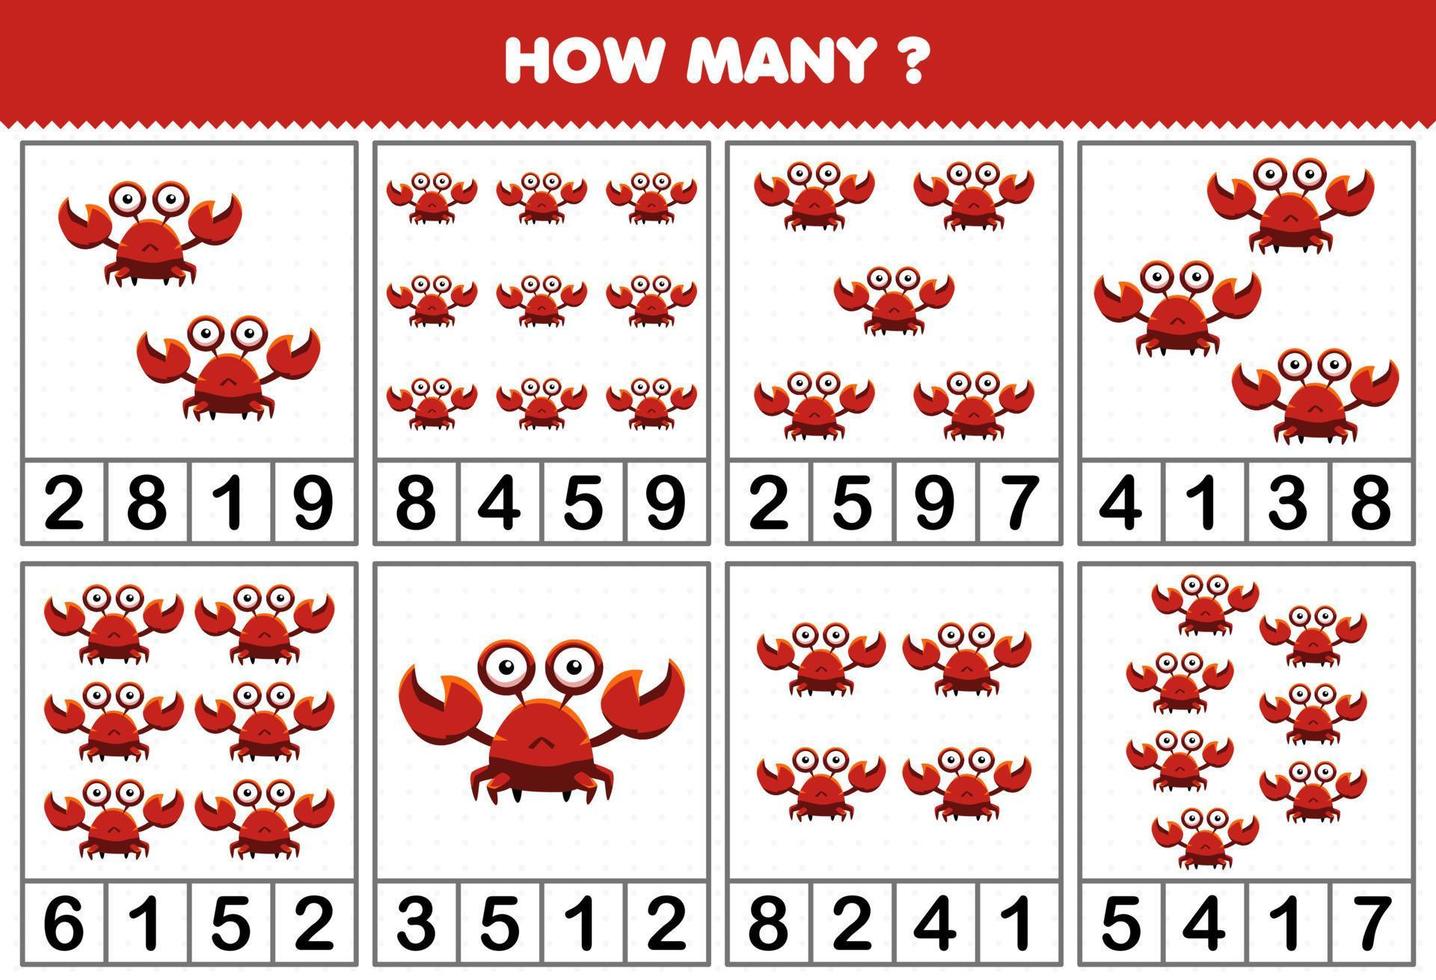 juego educativo para niños contando cuántos objetos hay en cada mesa de una linda hoja de trabajo imprimible de cangrejo de dibujos animados vector